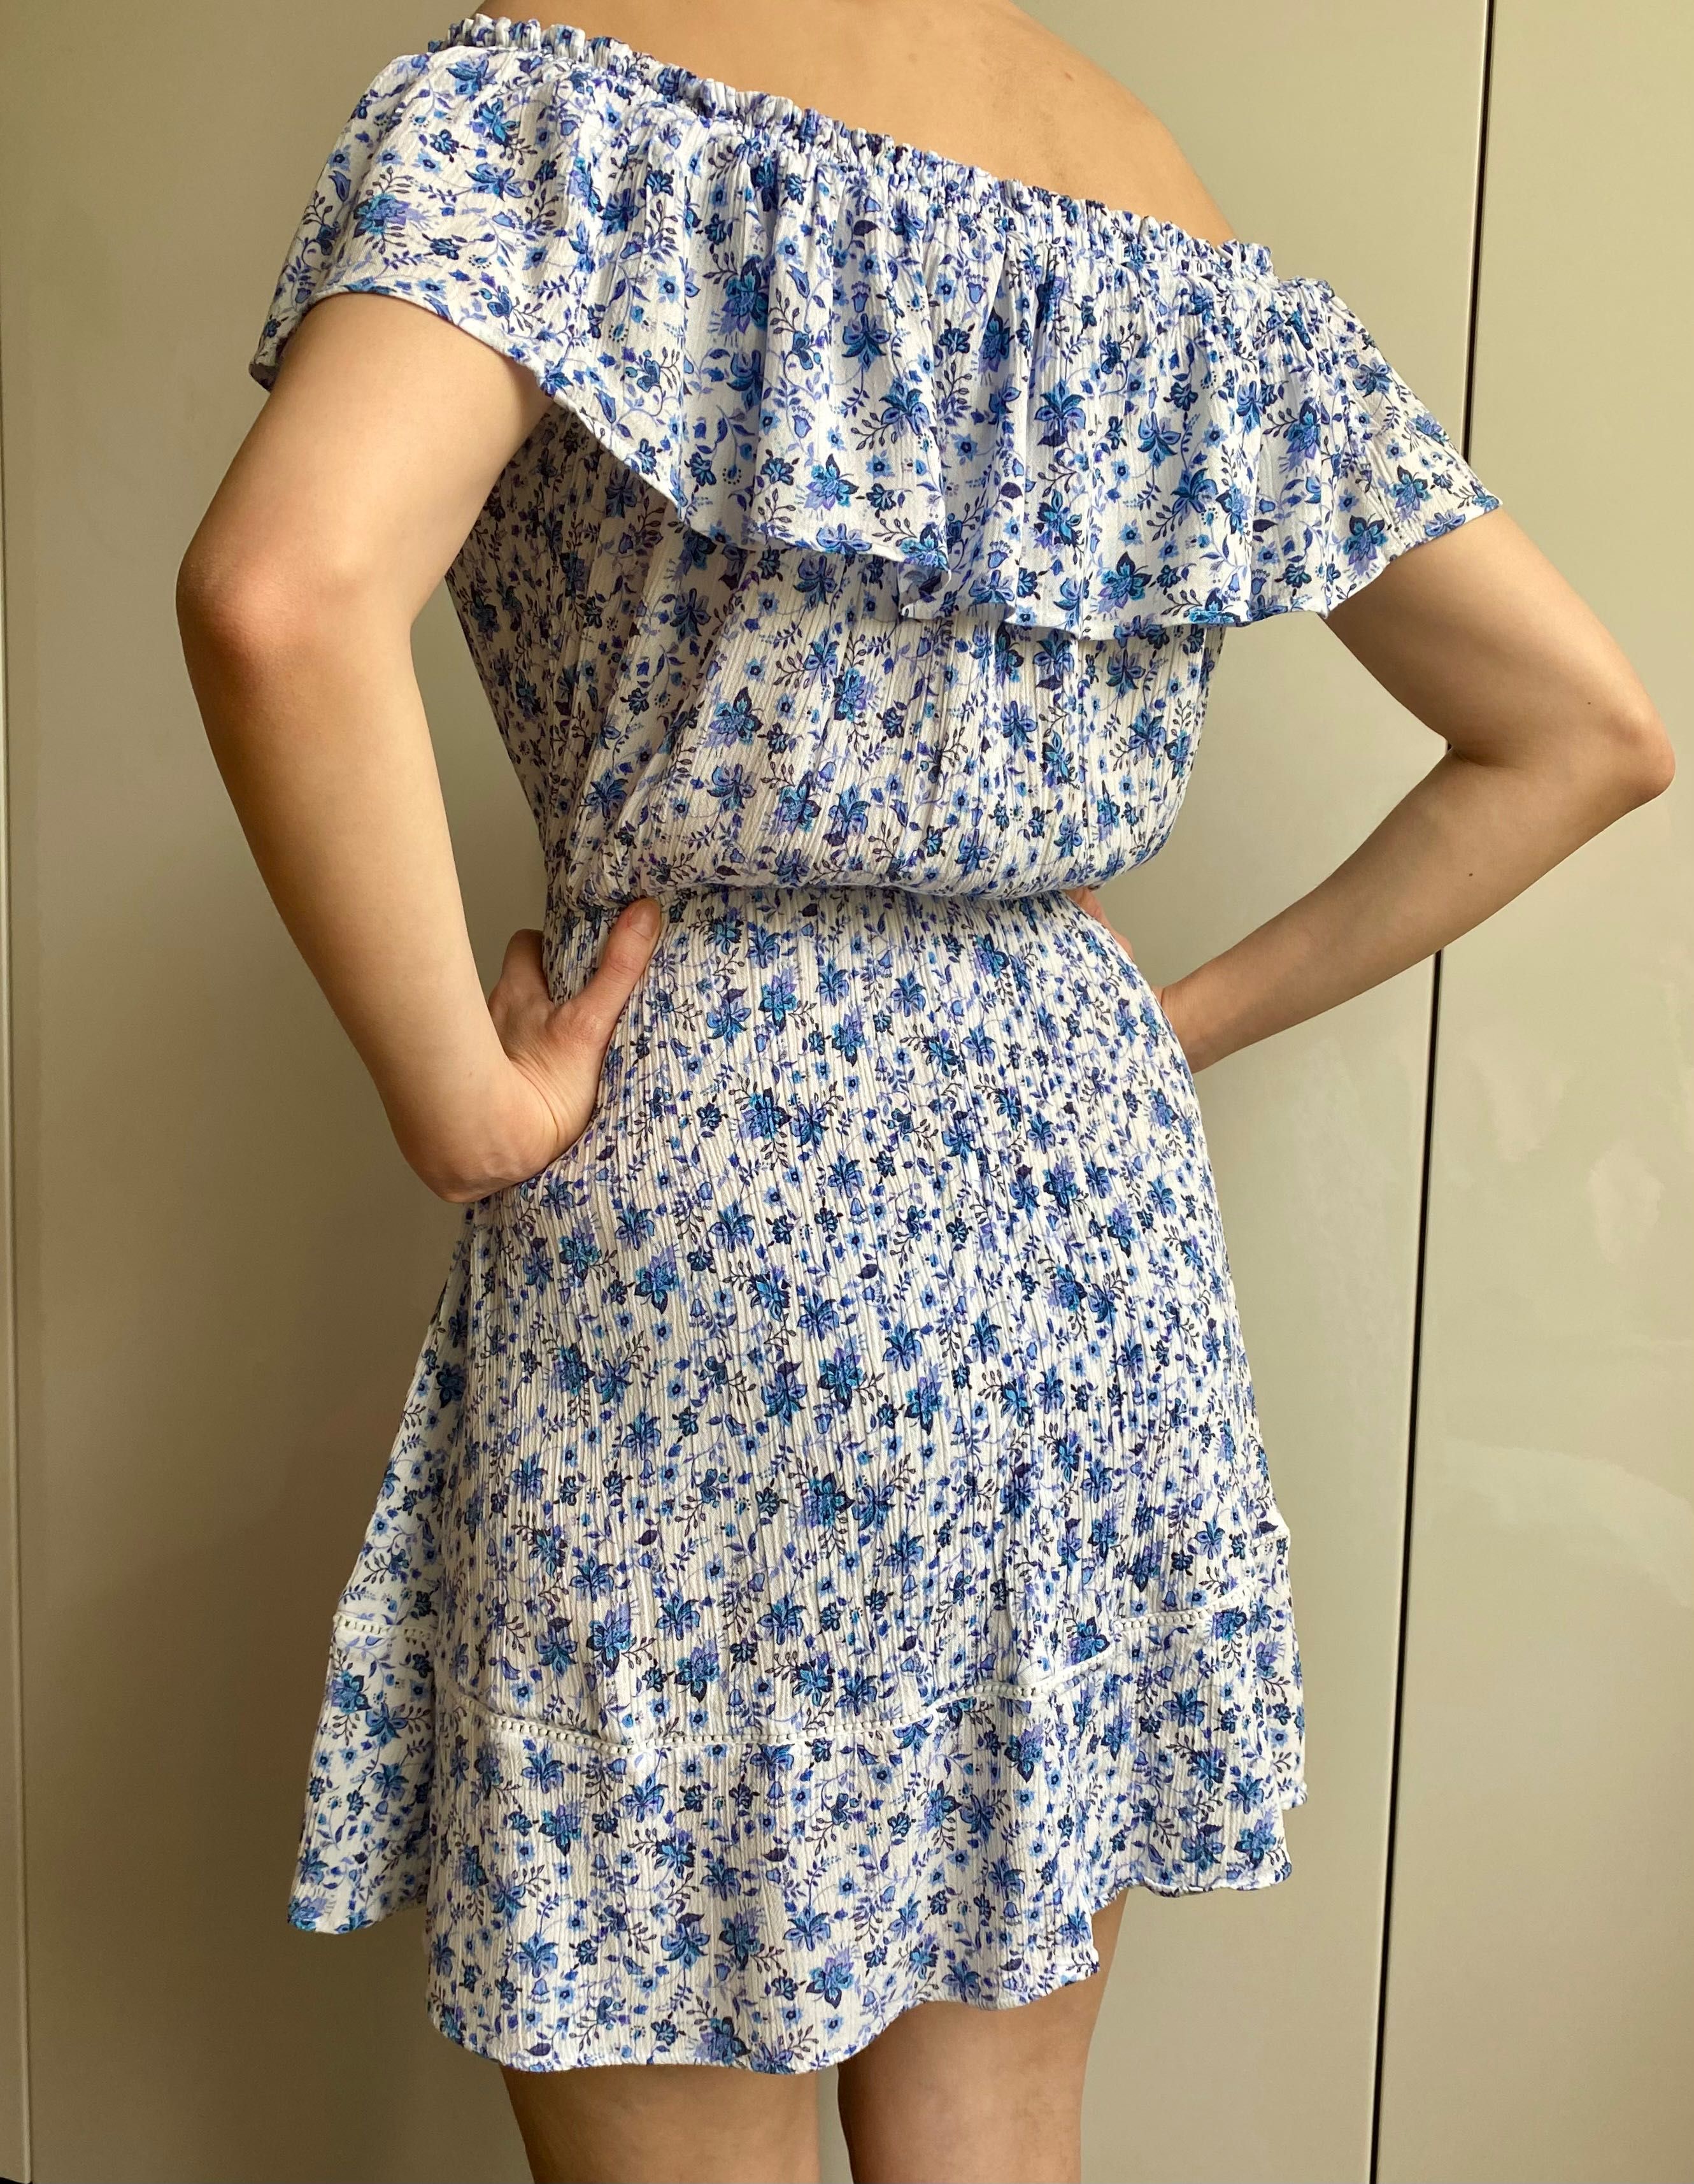 H&M biała sukienka hiszpanka odkryte ramiona niebieskie kwiaty 36